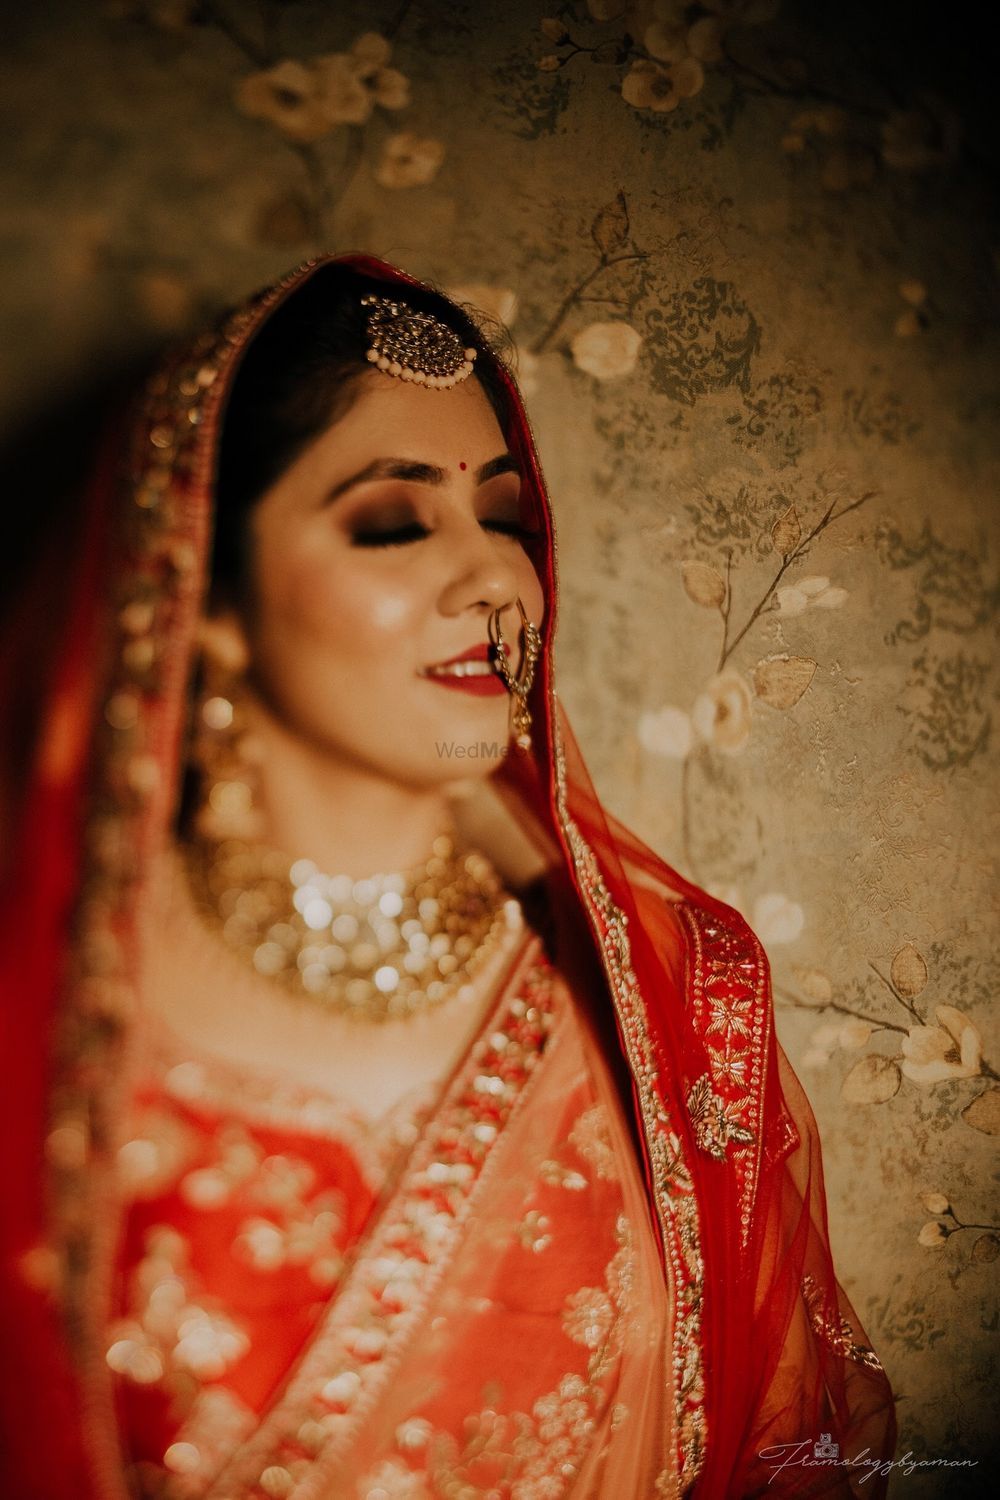 Photo By Roopali Talwar Makeup Artist - Bridal Makeup